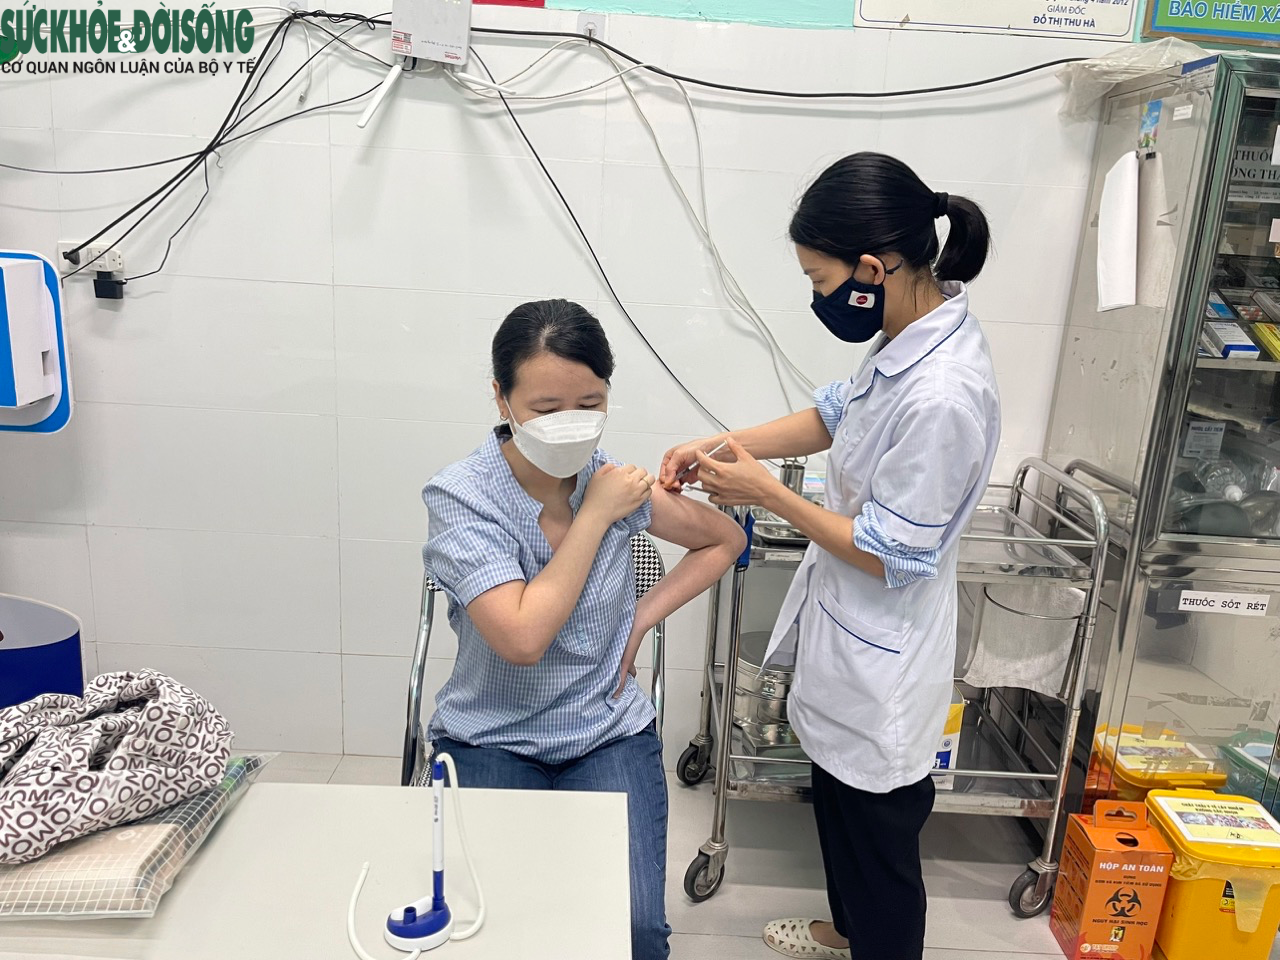 Ca mắc COVID-19 tiếp tục tăng, người Hà Nội chủ động đi tiêm vaccine - Ảnh 8.